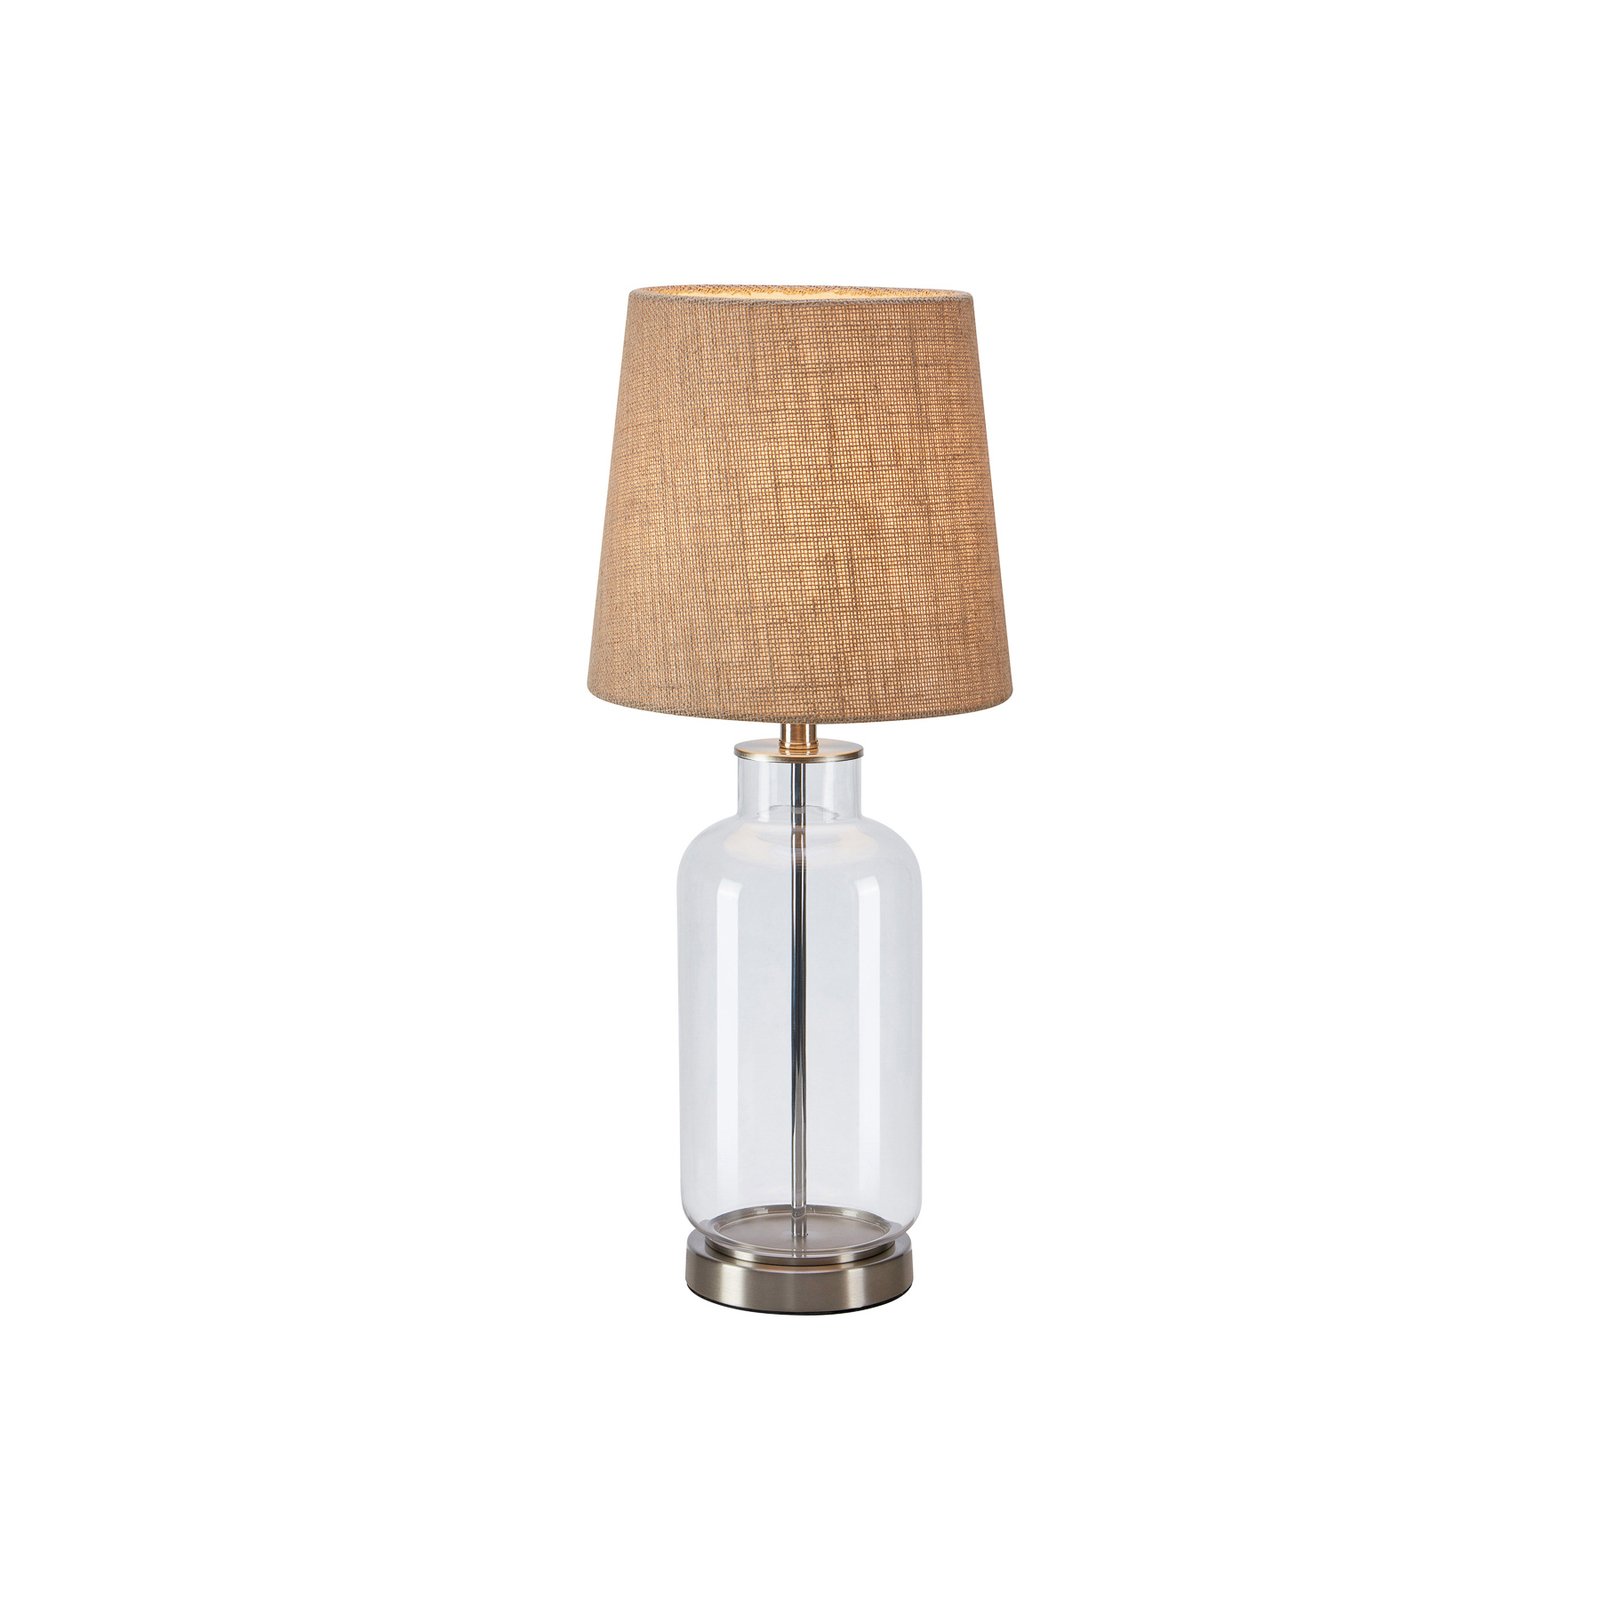 Costero stalinė lempa, skaidri / natūrali, 61,5 cm